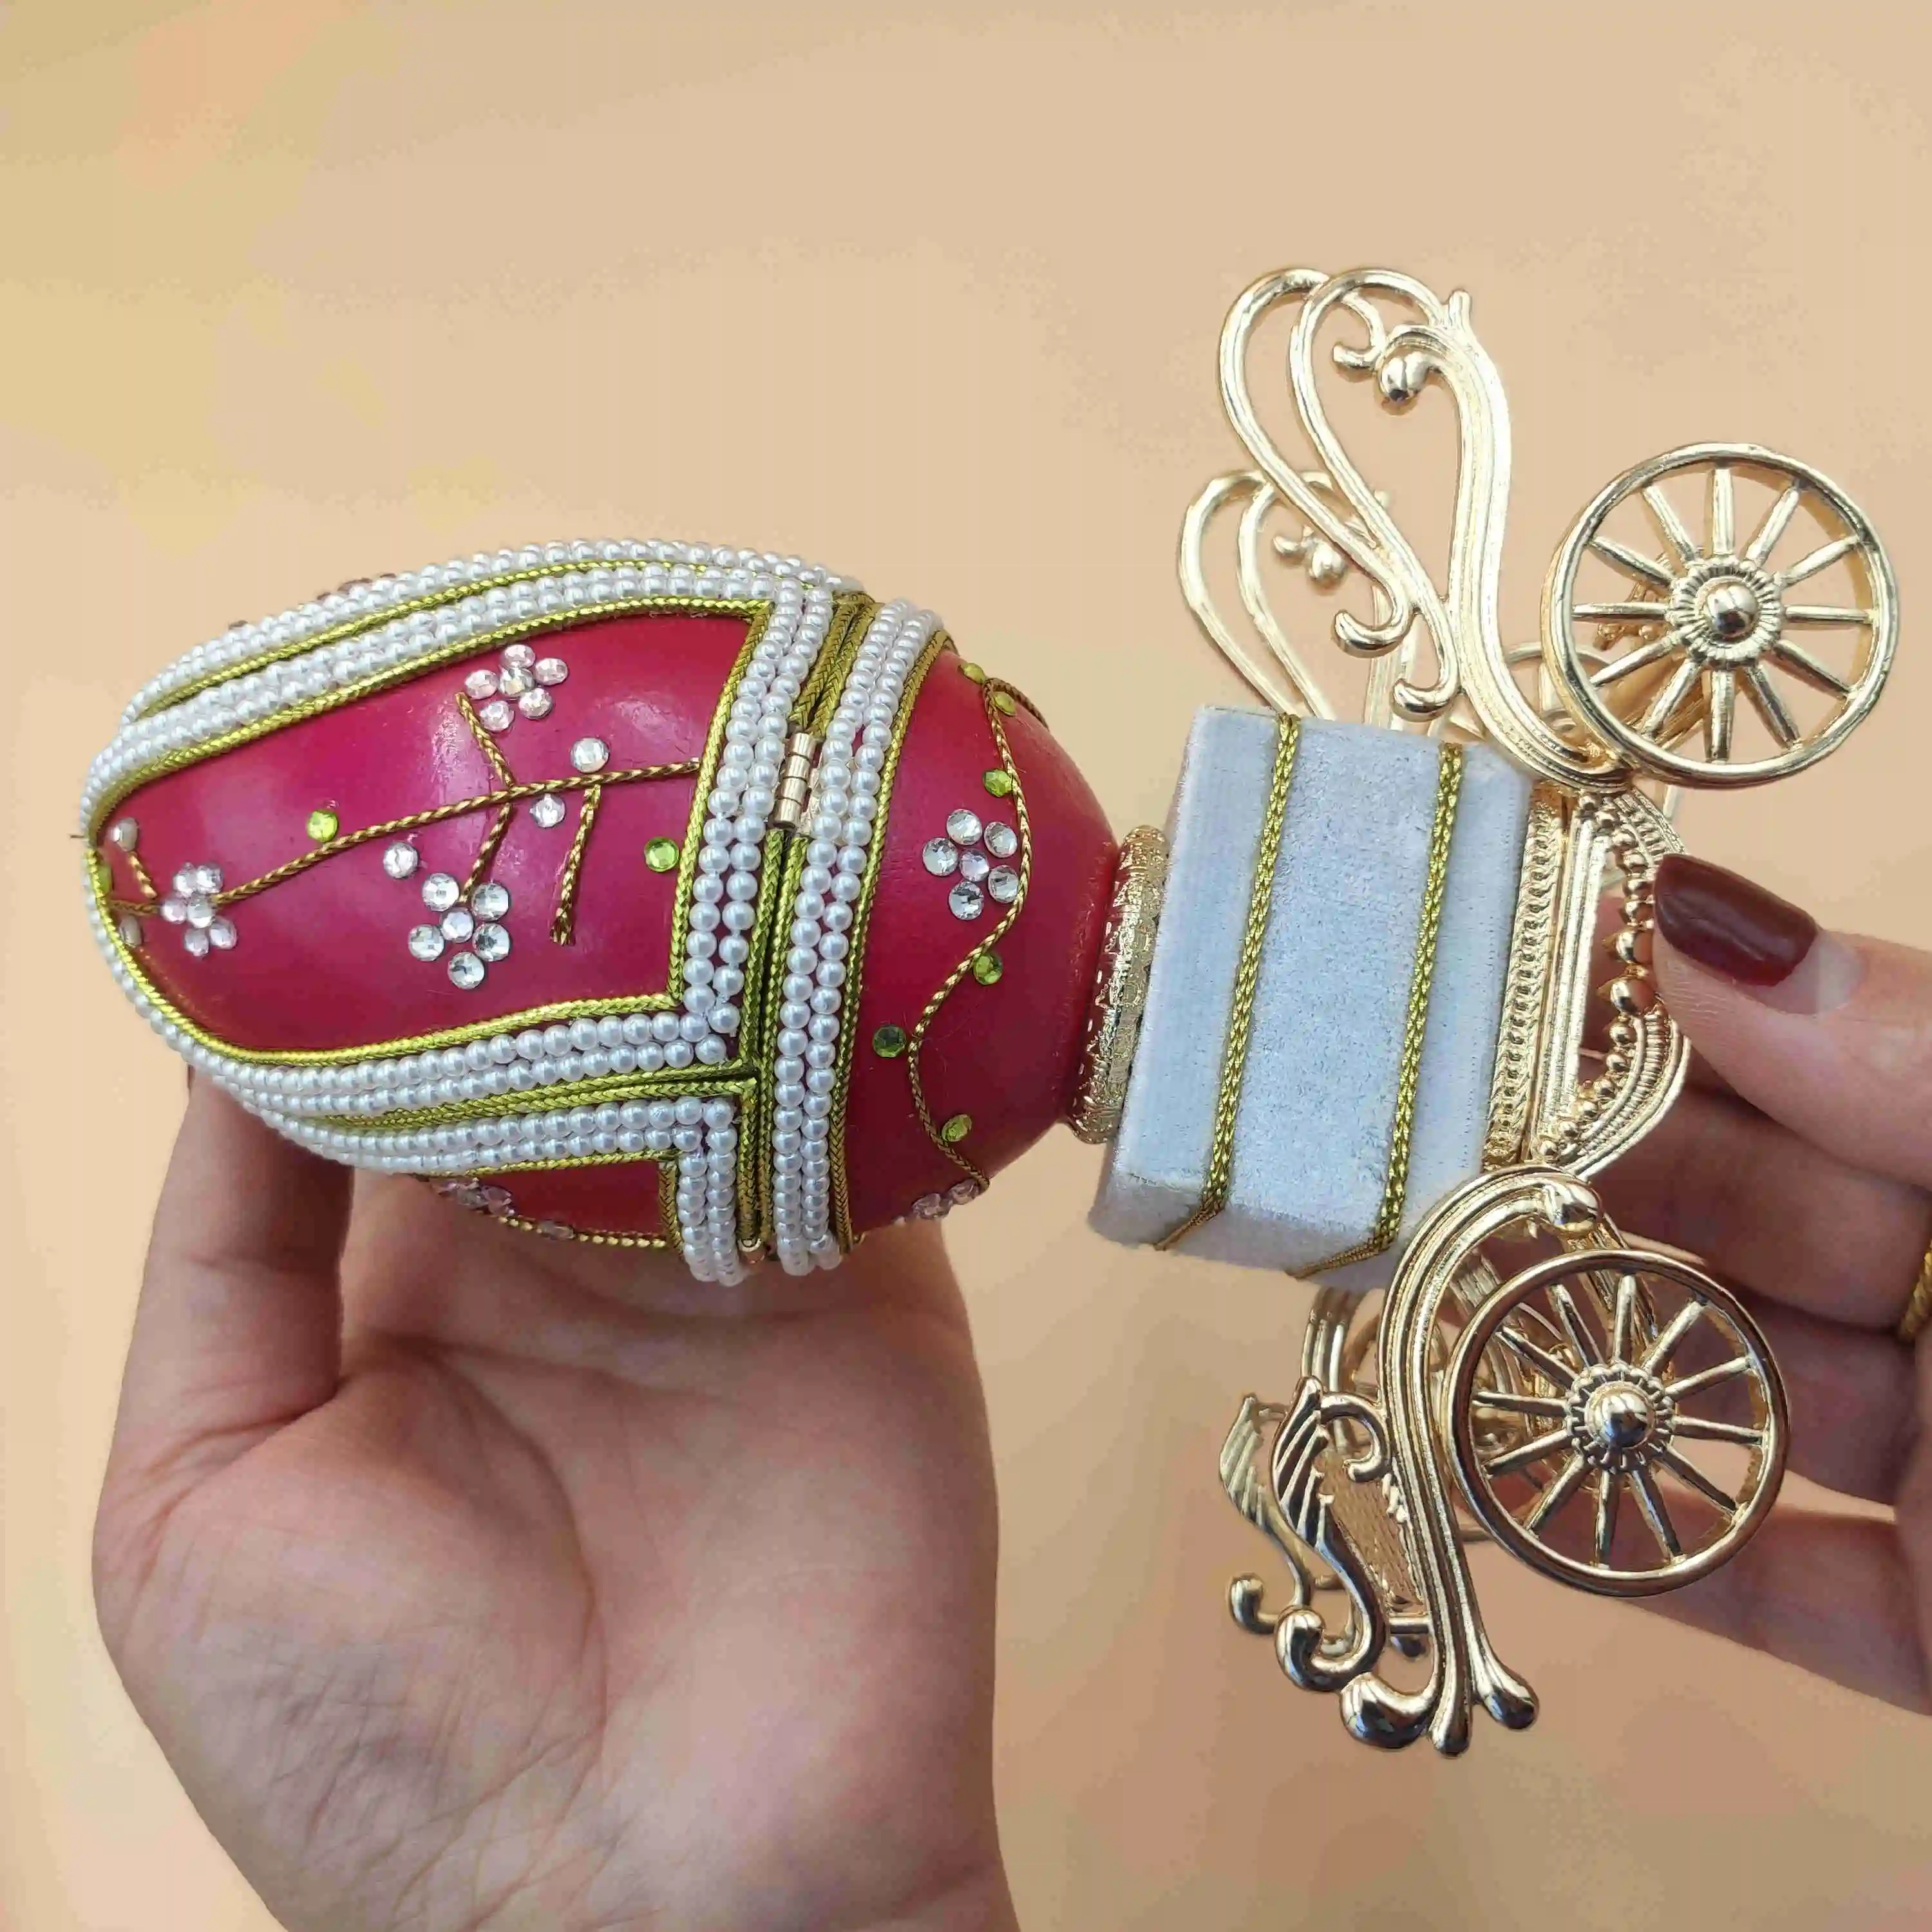 Schlussverkauf russische königliche Eierschnitzerei-Musikbox kreatives Handwerk Geschenk Ornamente Musikbox